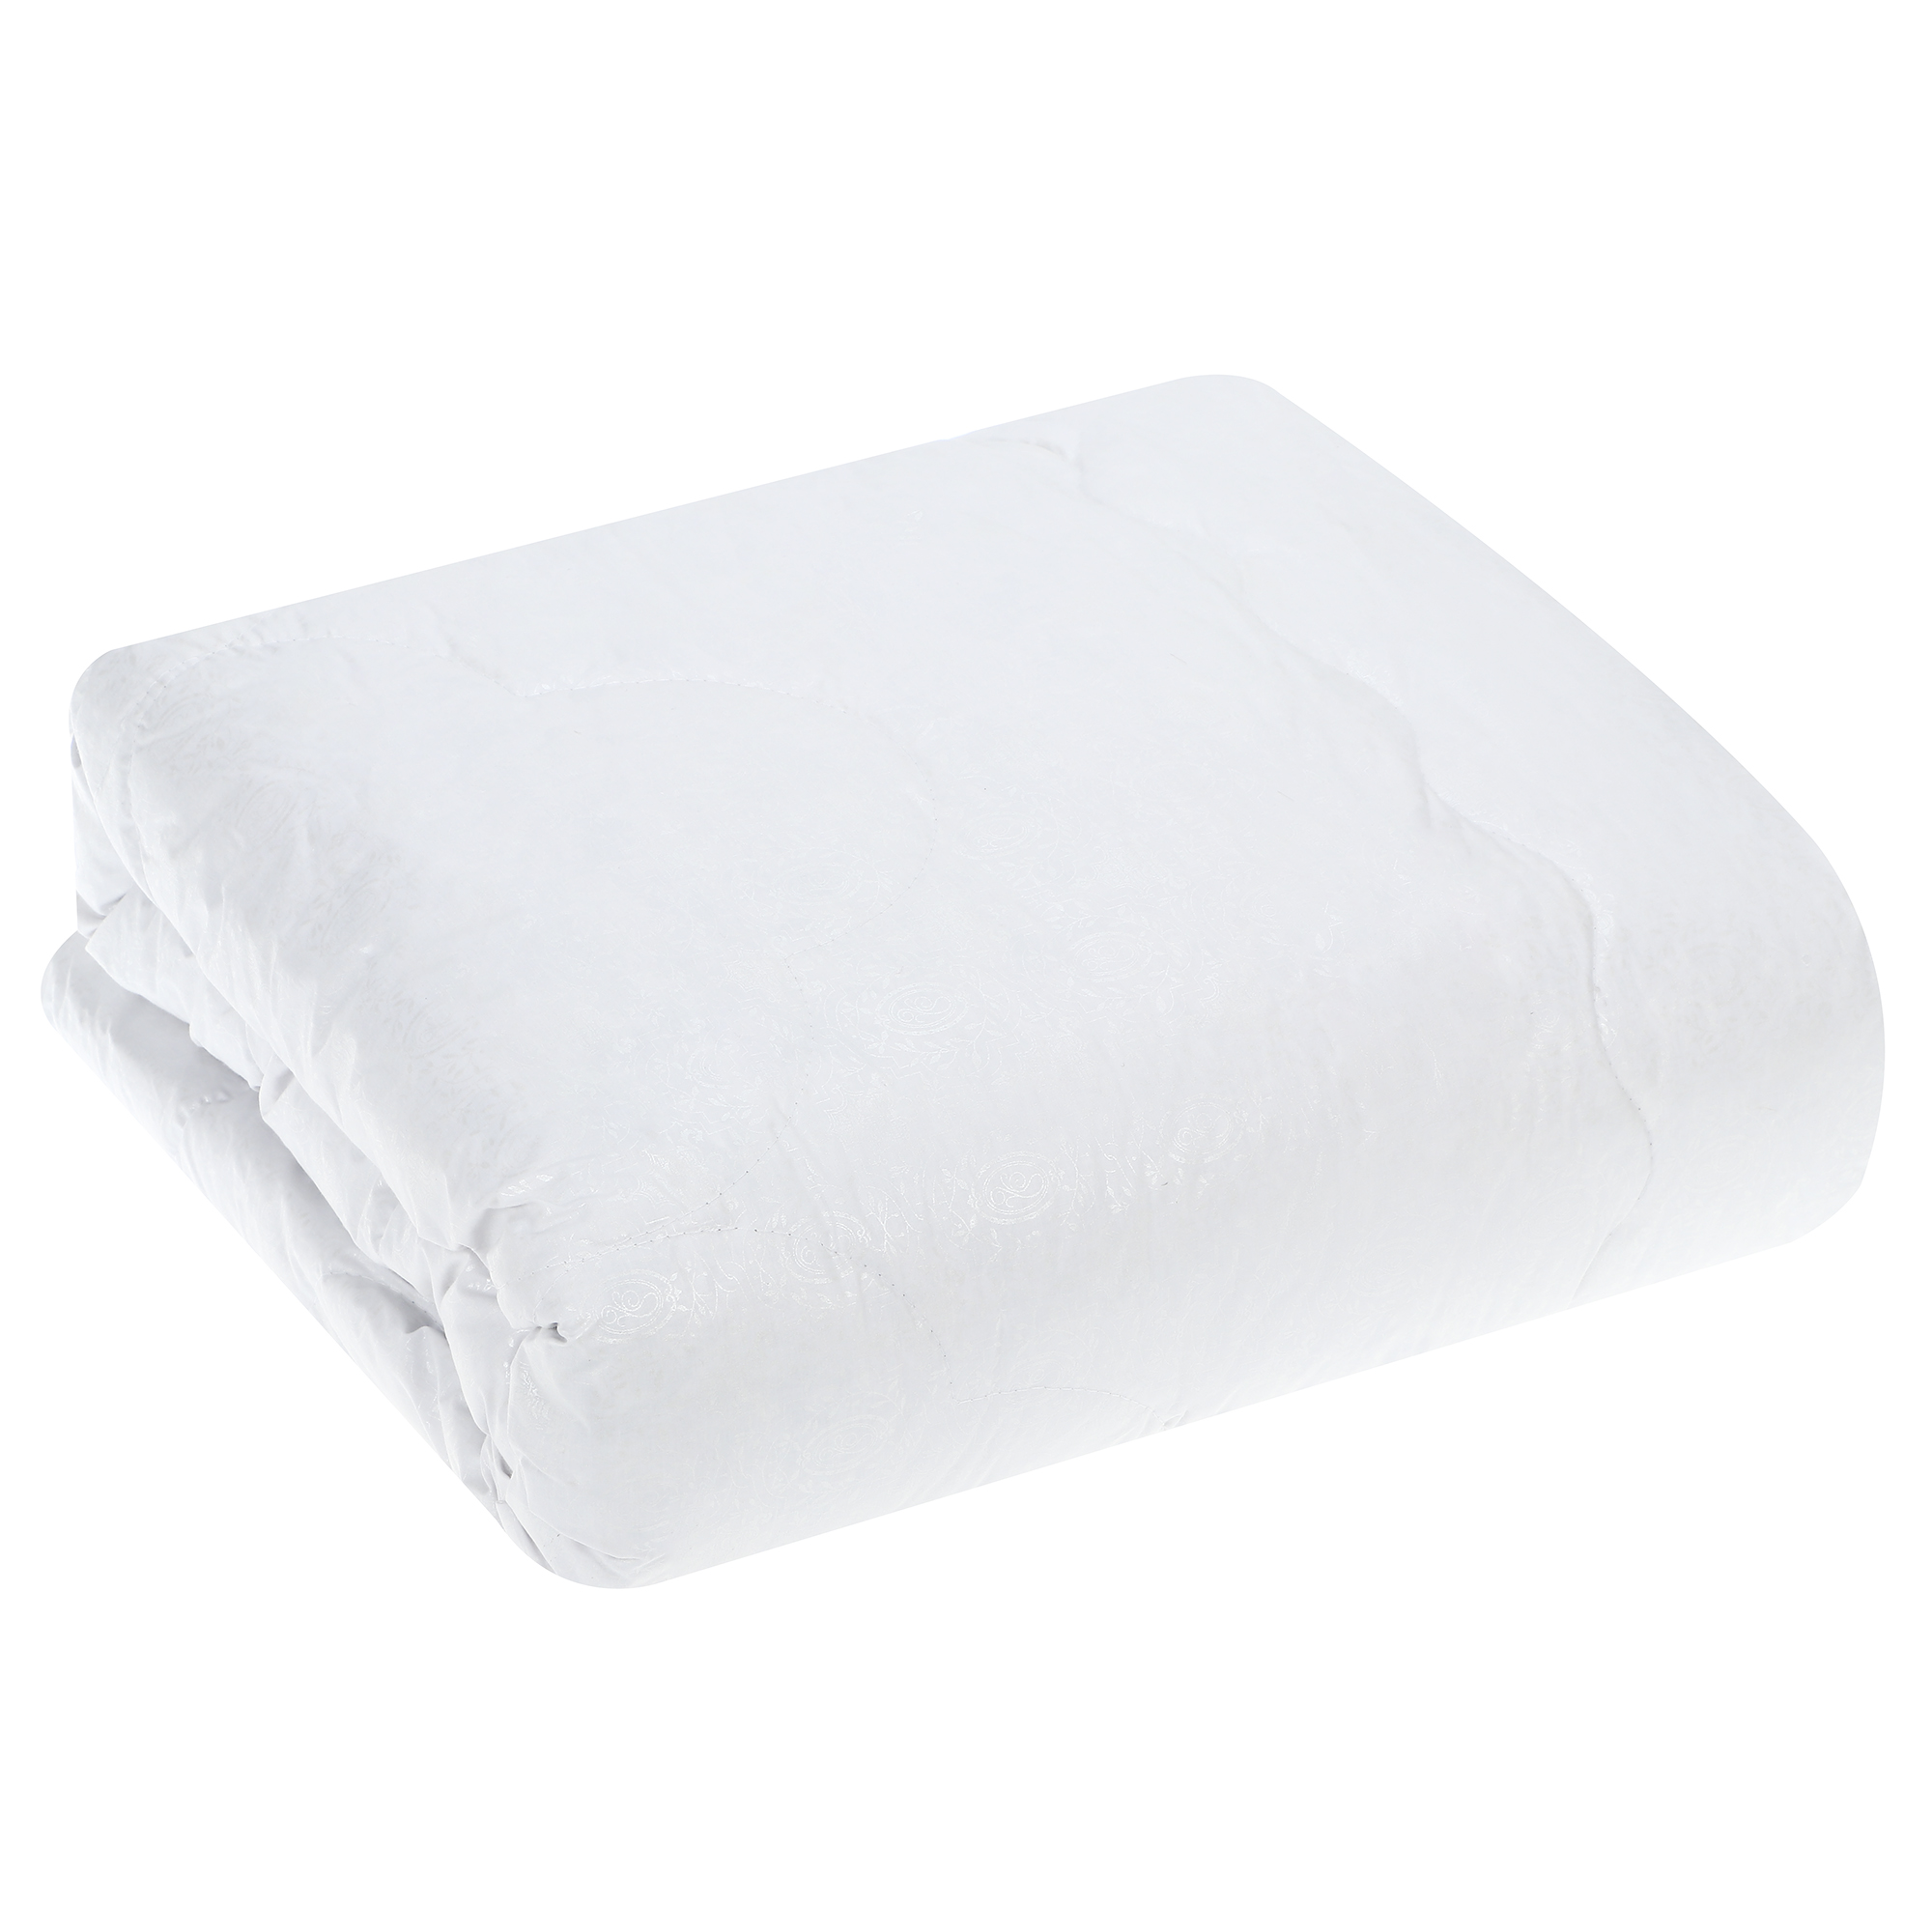 Одеяло Medsleep Landau белое 200х210 см, цвет белый - фото 5